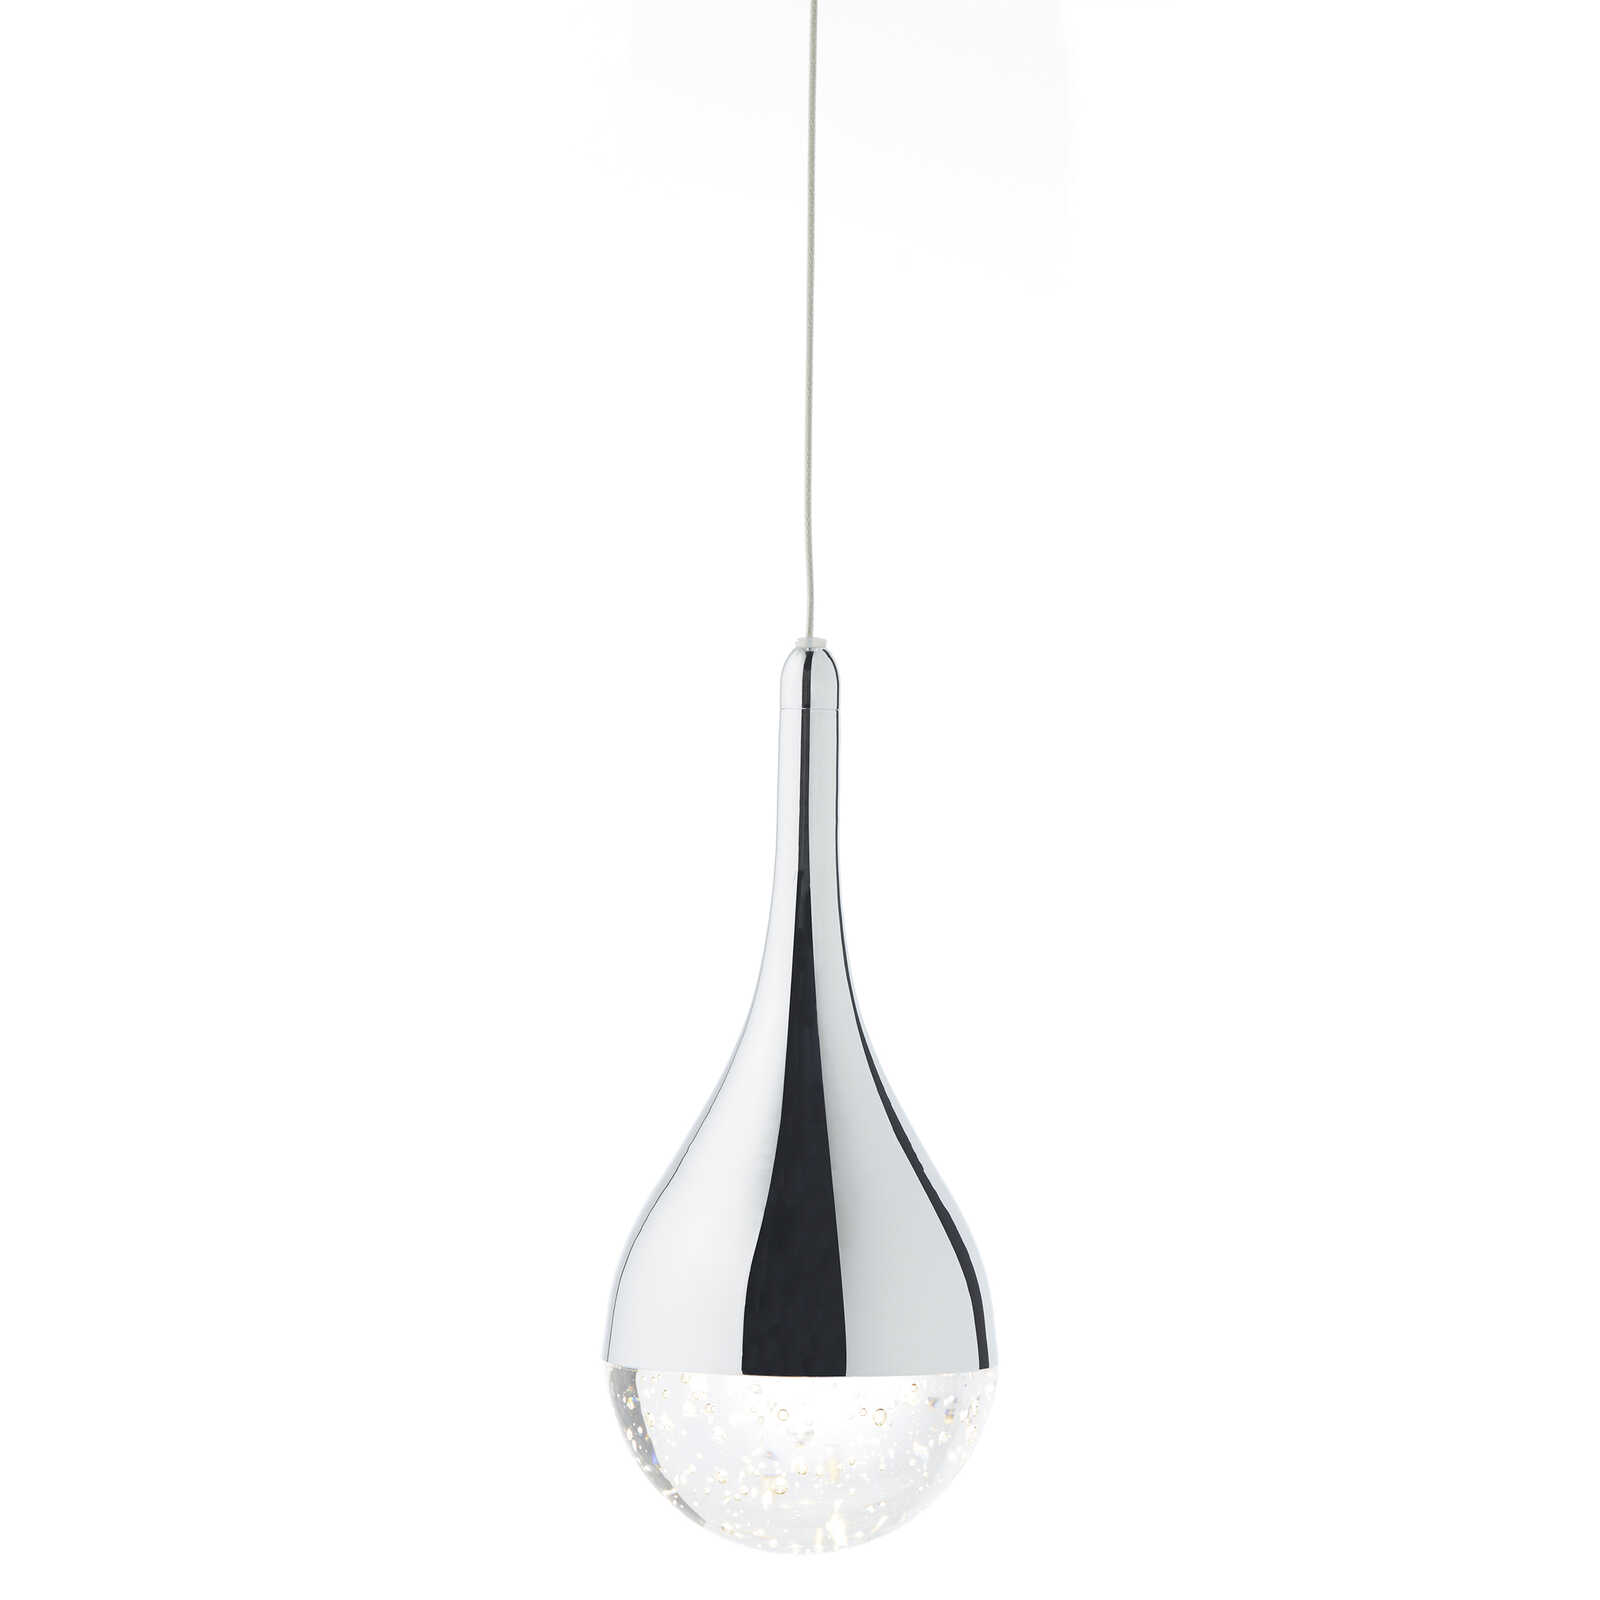             Glazen hanglamp - Gustav 2 - Metallic
        